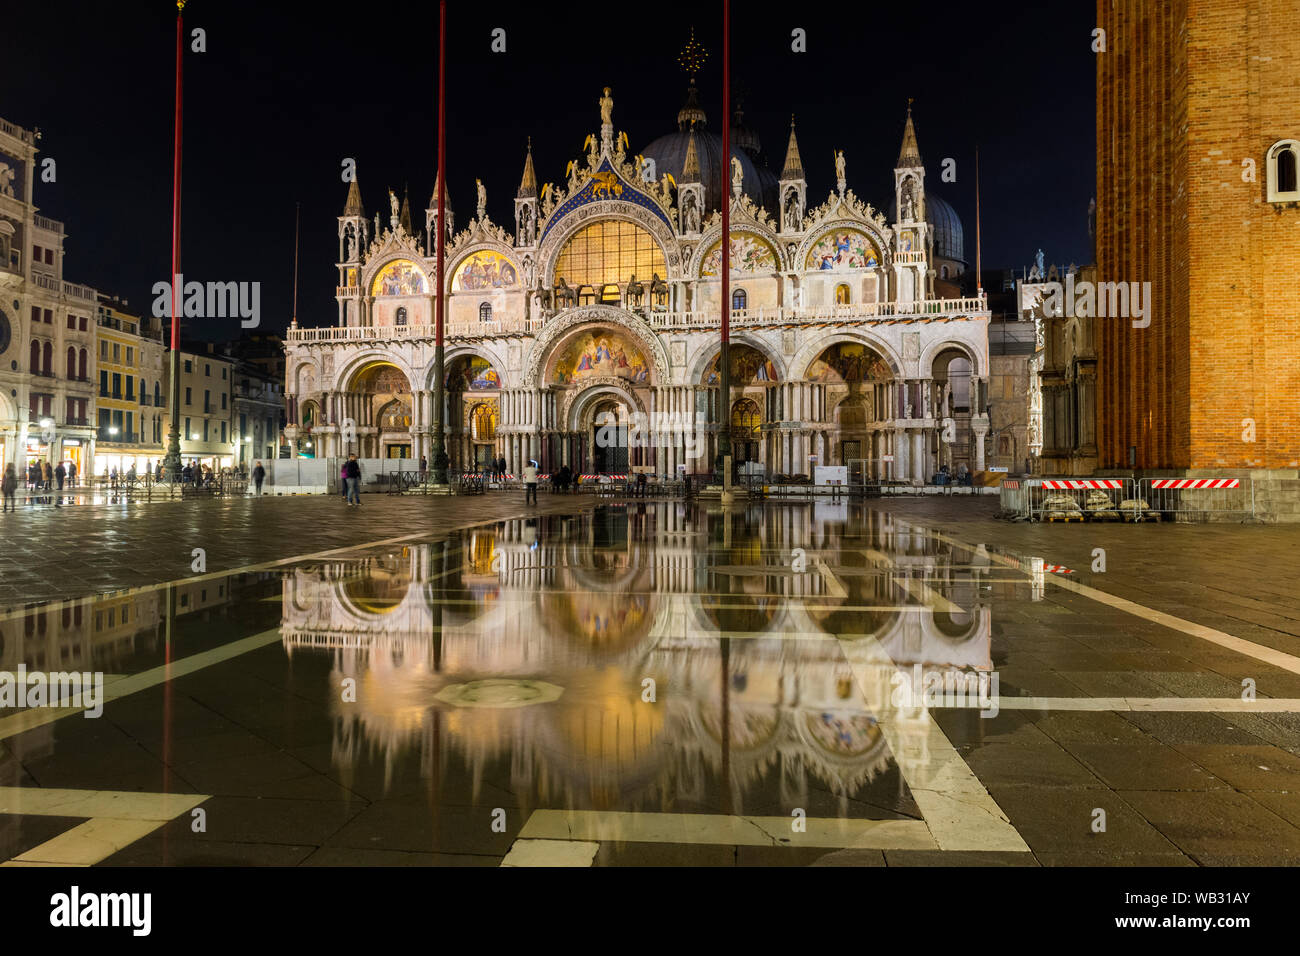 La fachada oeste de la Basilica di San Marco (Basílica de San Marcos) por la noche durante una acqua alta (HIGH), caso del agua, la Plaza de San Marcos, en Venecia, Italia Foto de stock